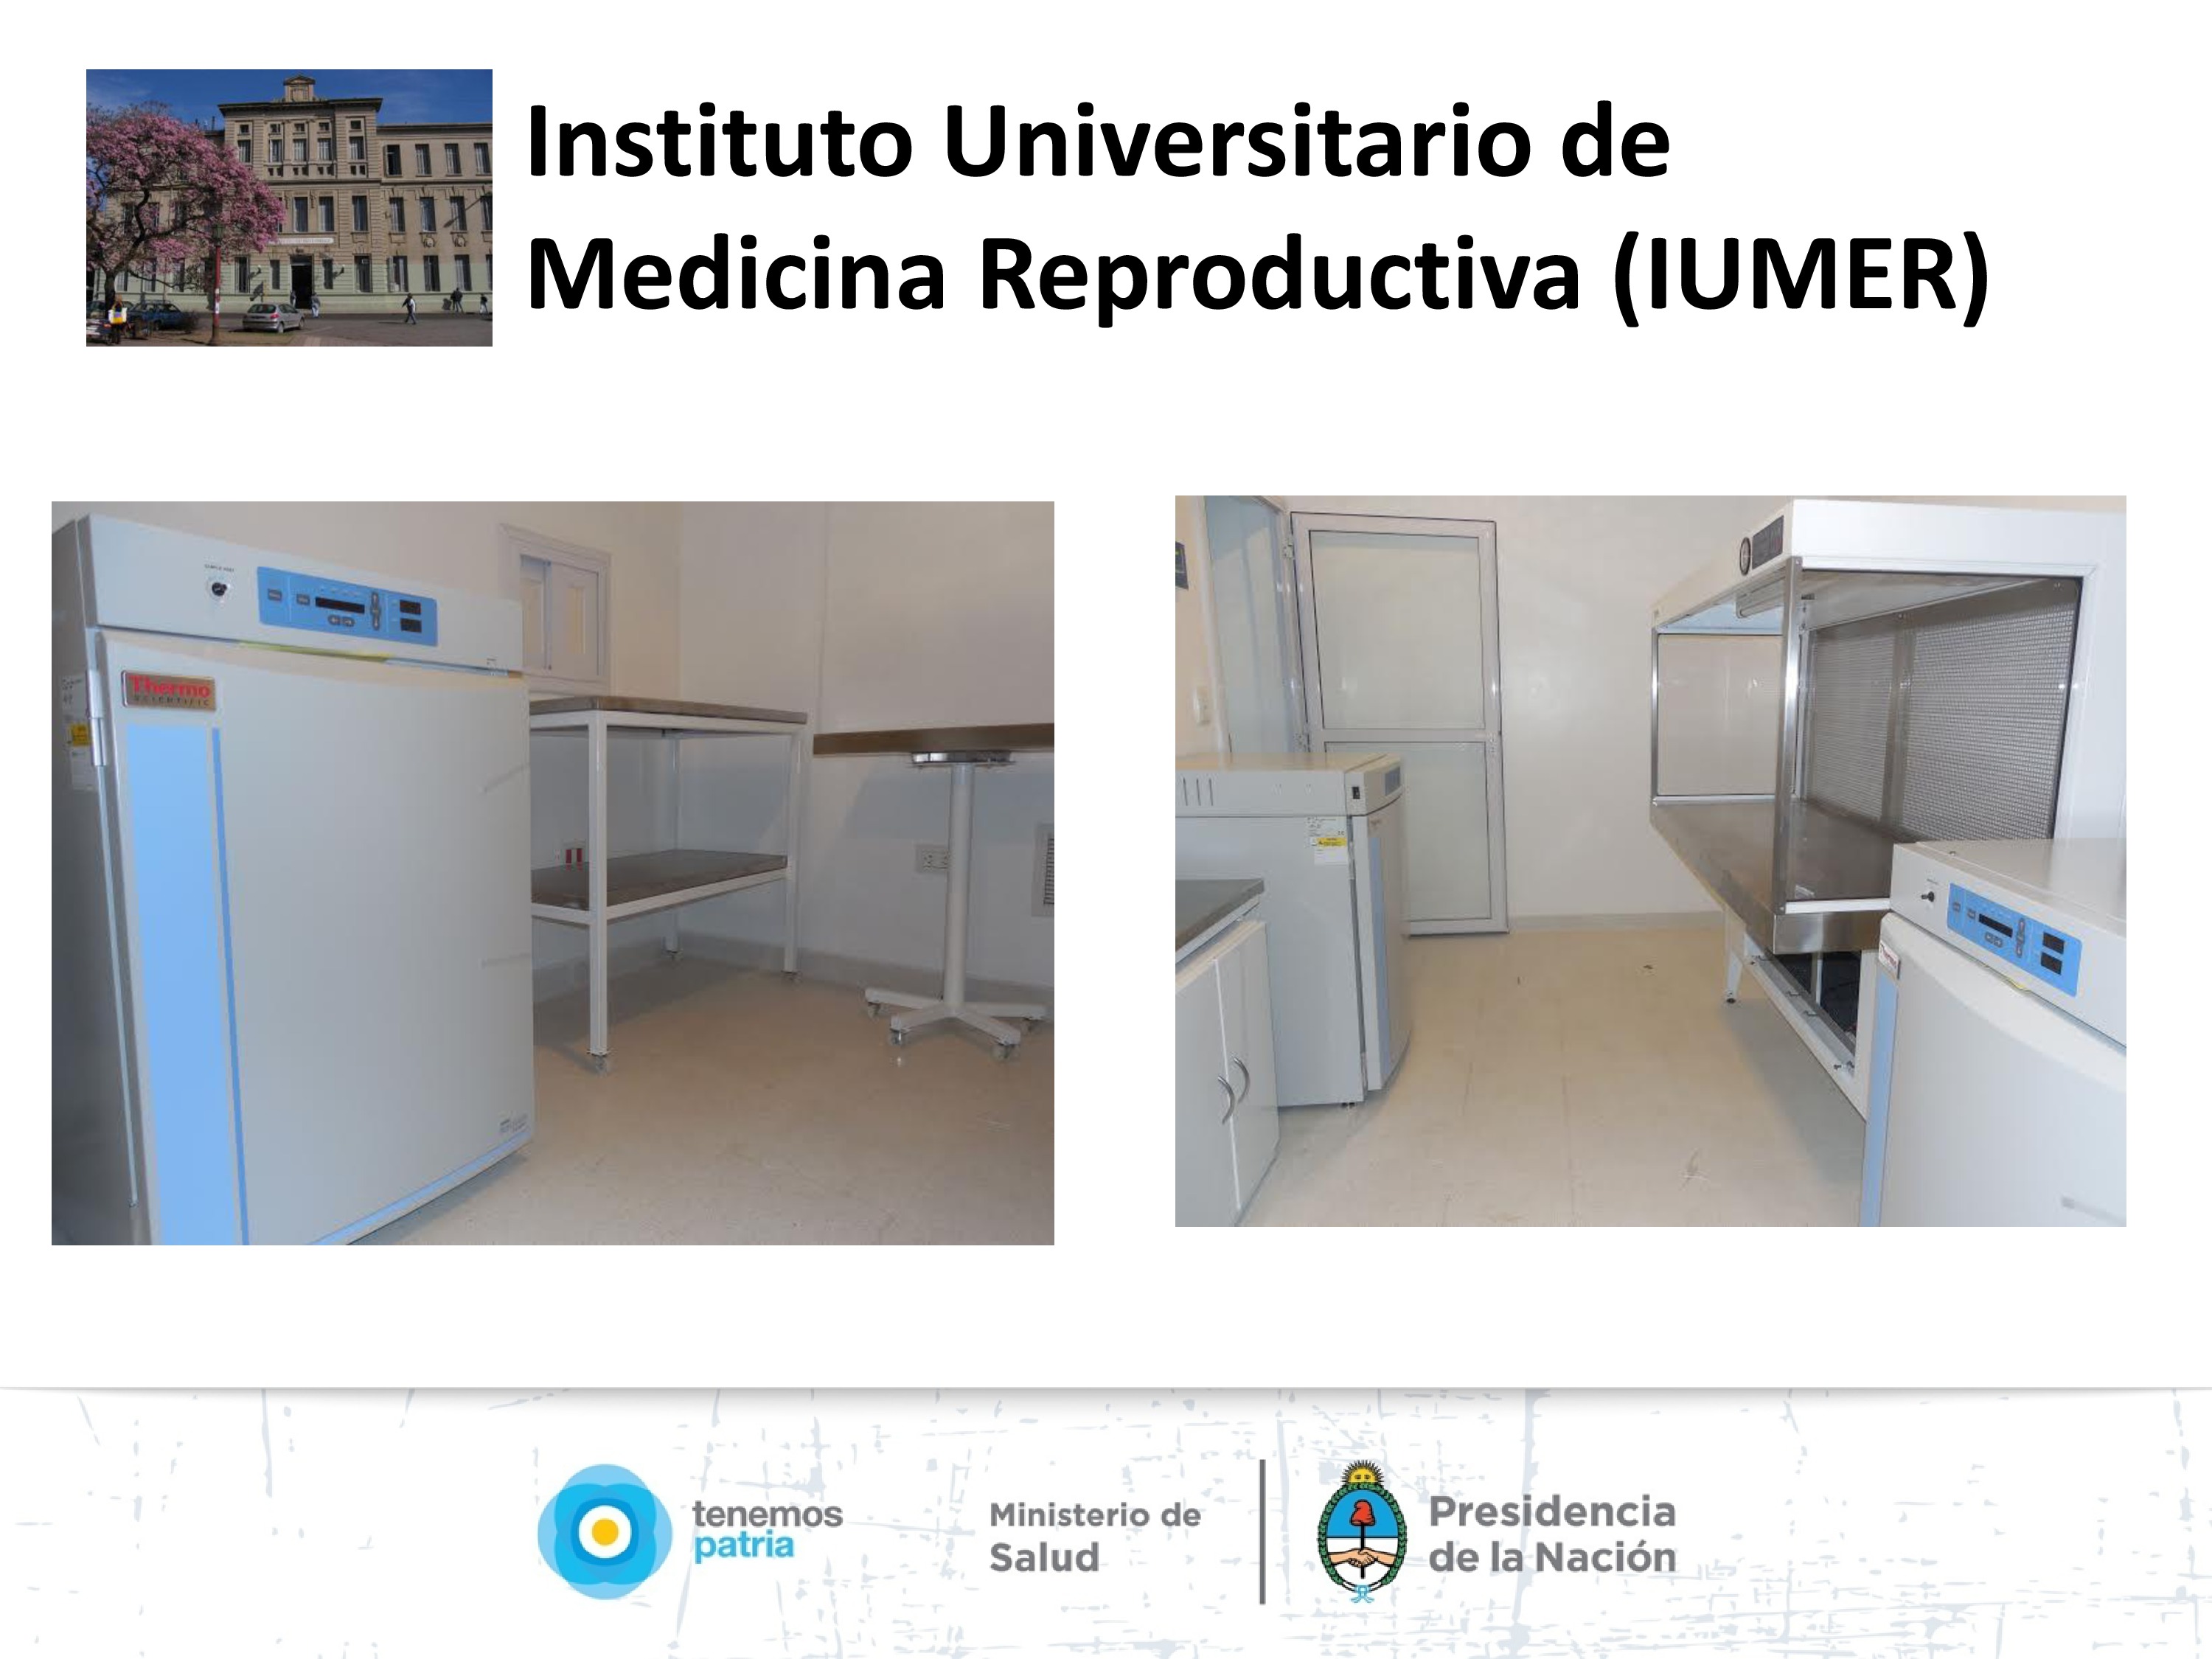 Instituto Universitario de Medicina Reproductiva, Córdoba. 